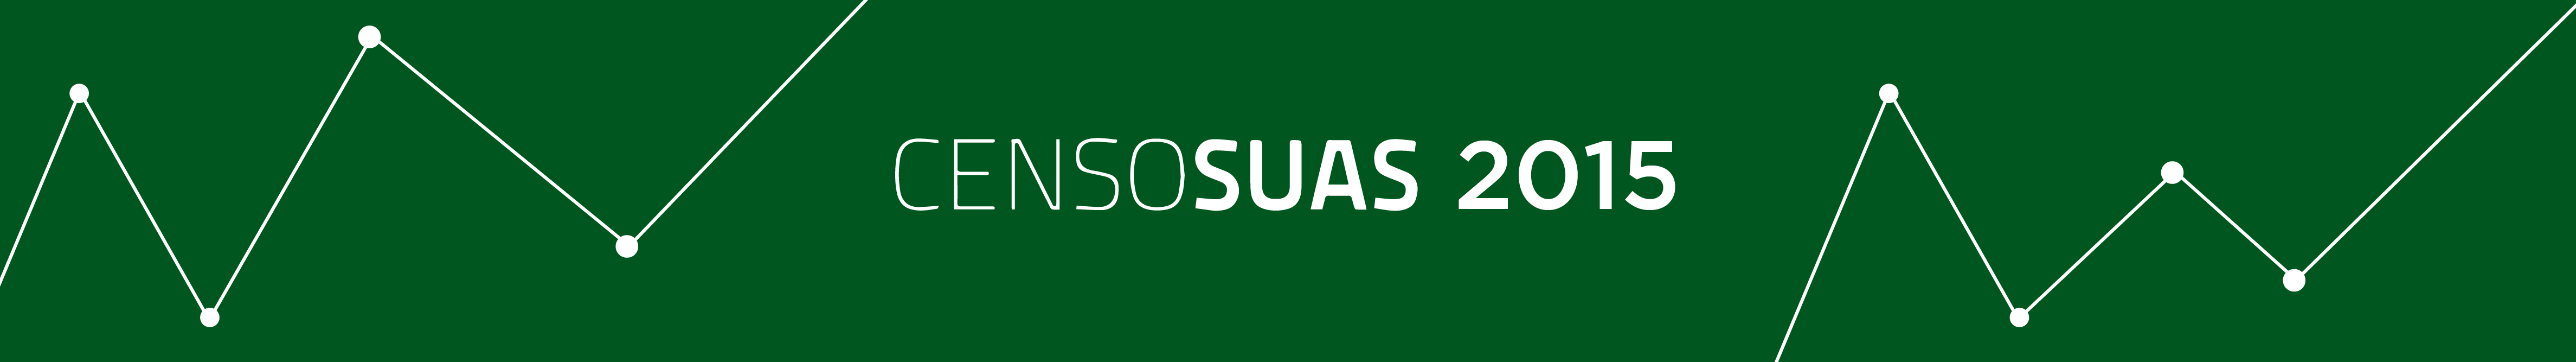 Censo SUAS 2015